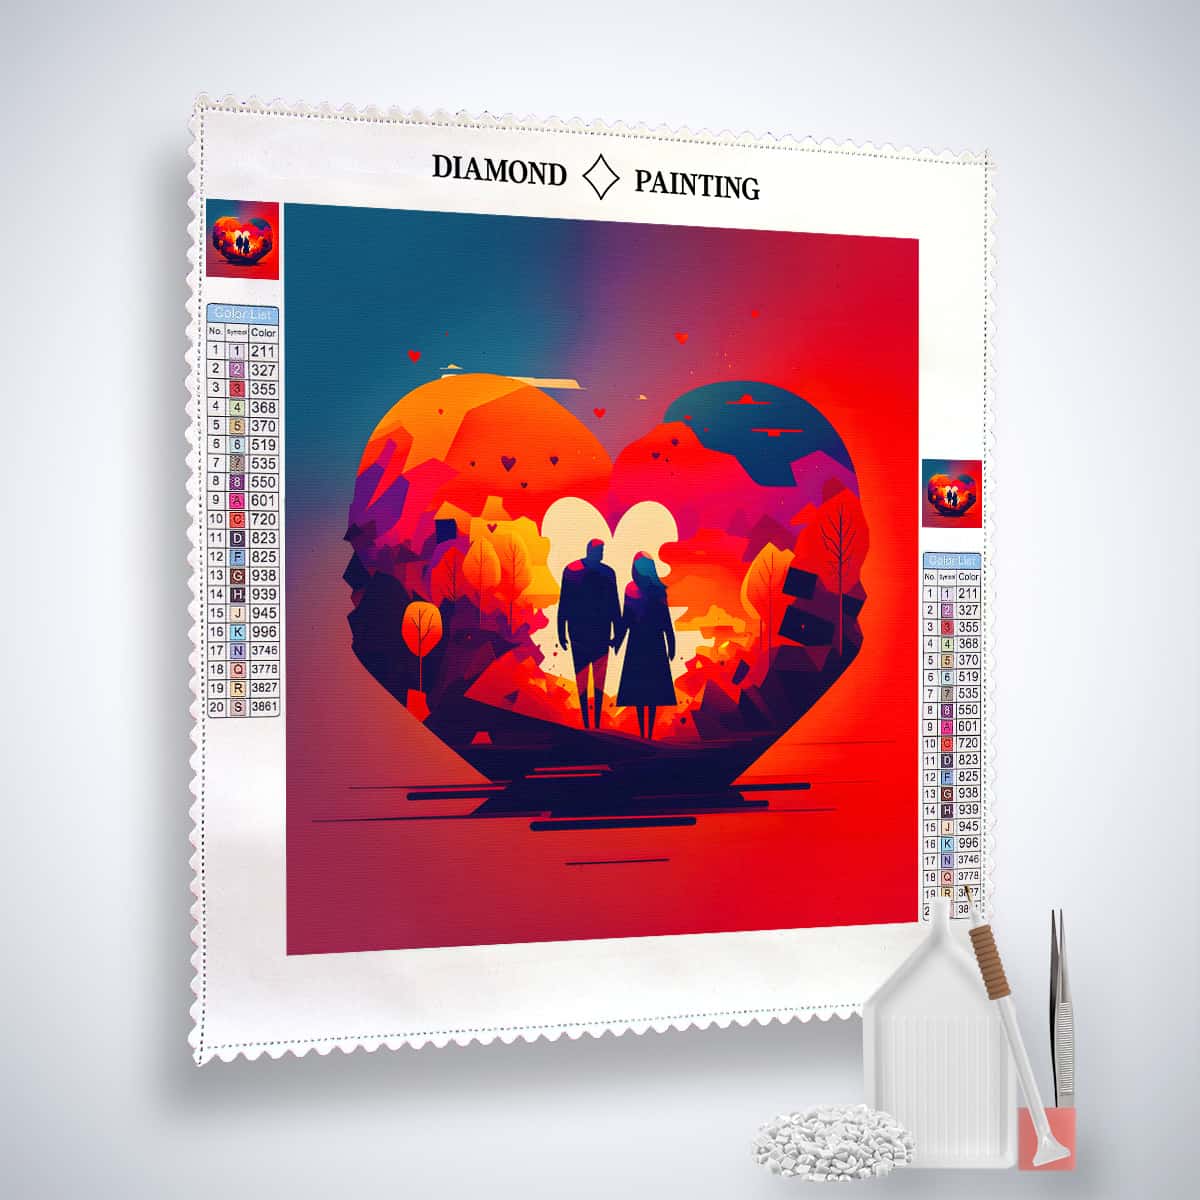 AB Diamond Painting - Rote Liebe - gedruckt in Ultra-HD - AB Diamond, Herz, Liebe, Neu eingetroffen, Quadratisch